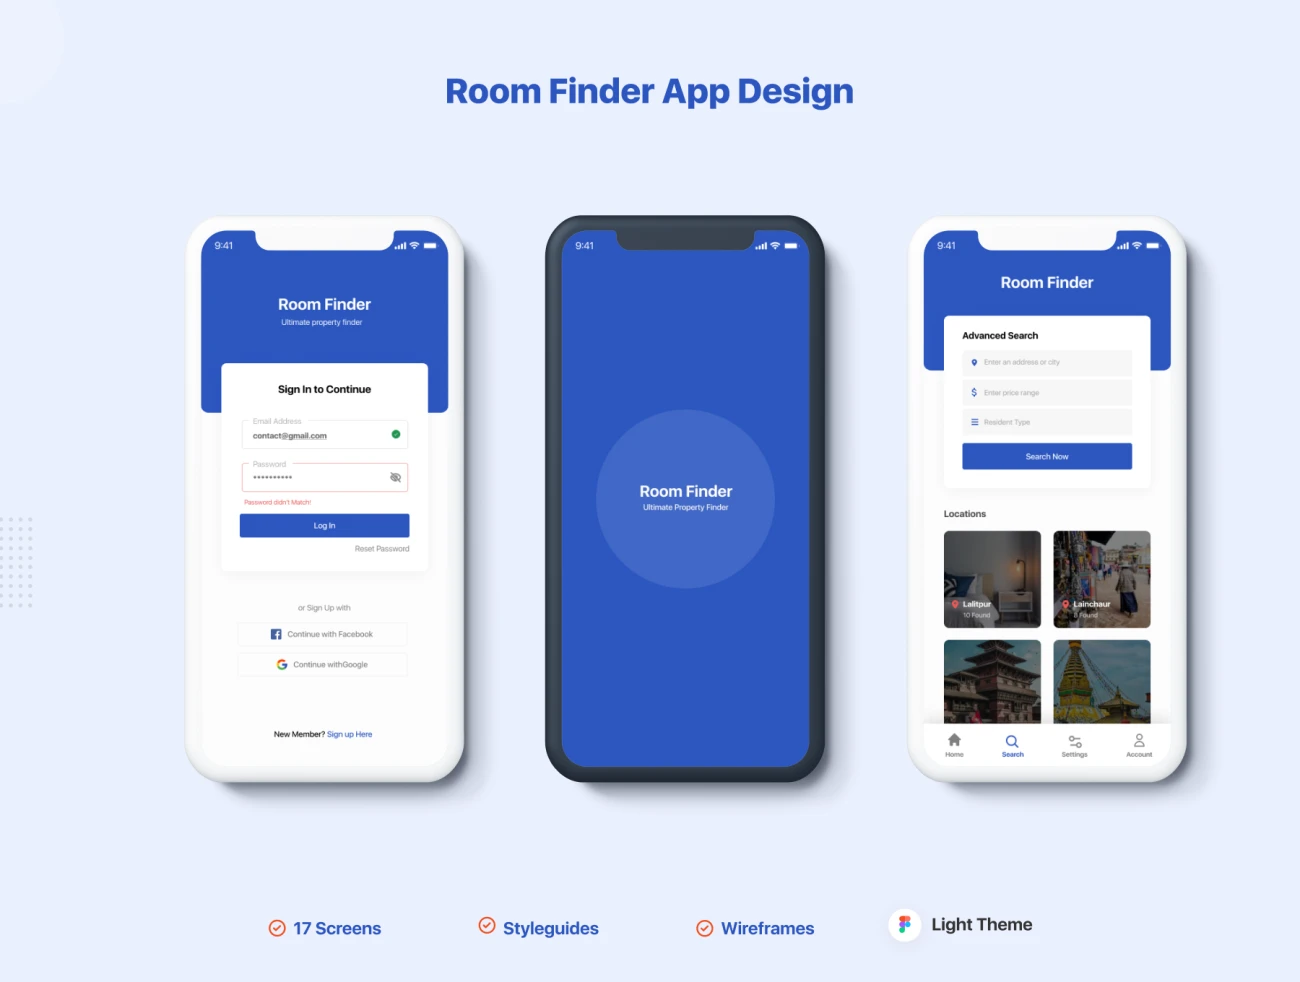 17屏找房租房手机应用UI套件设计素材 Room Finder App Design .figma插图1